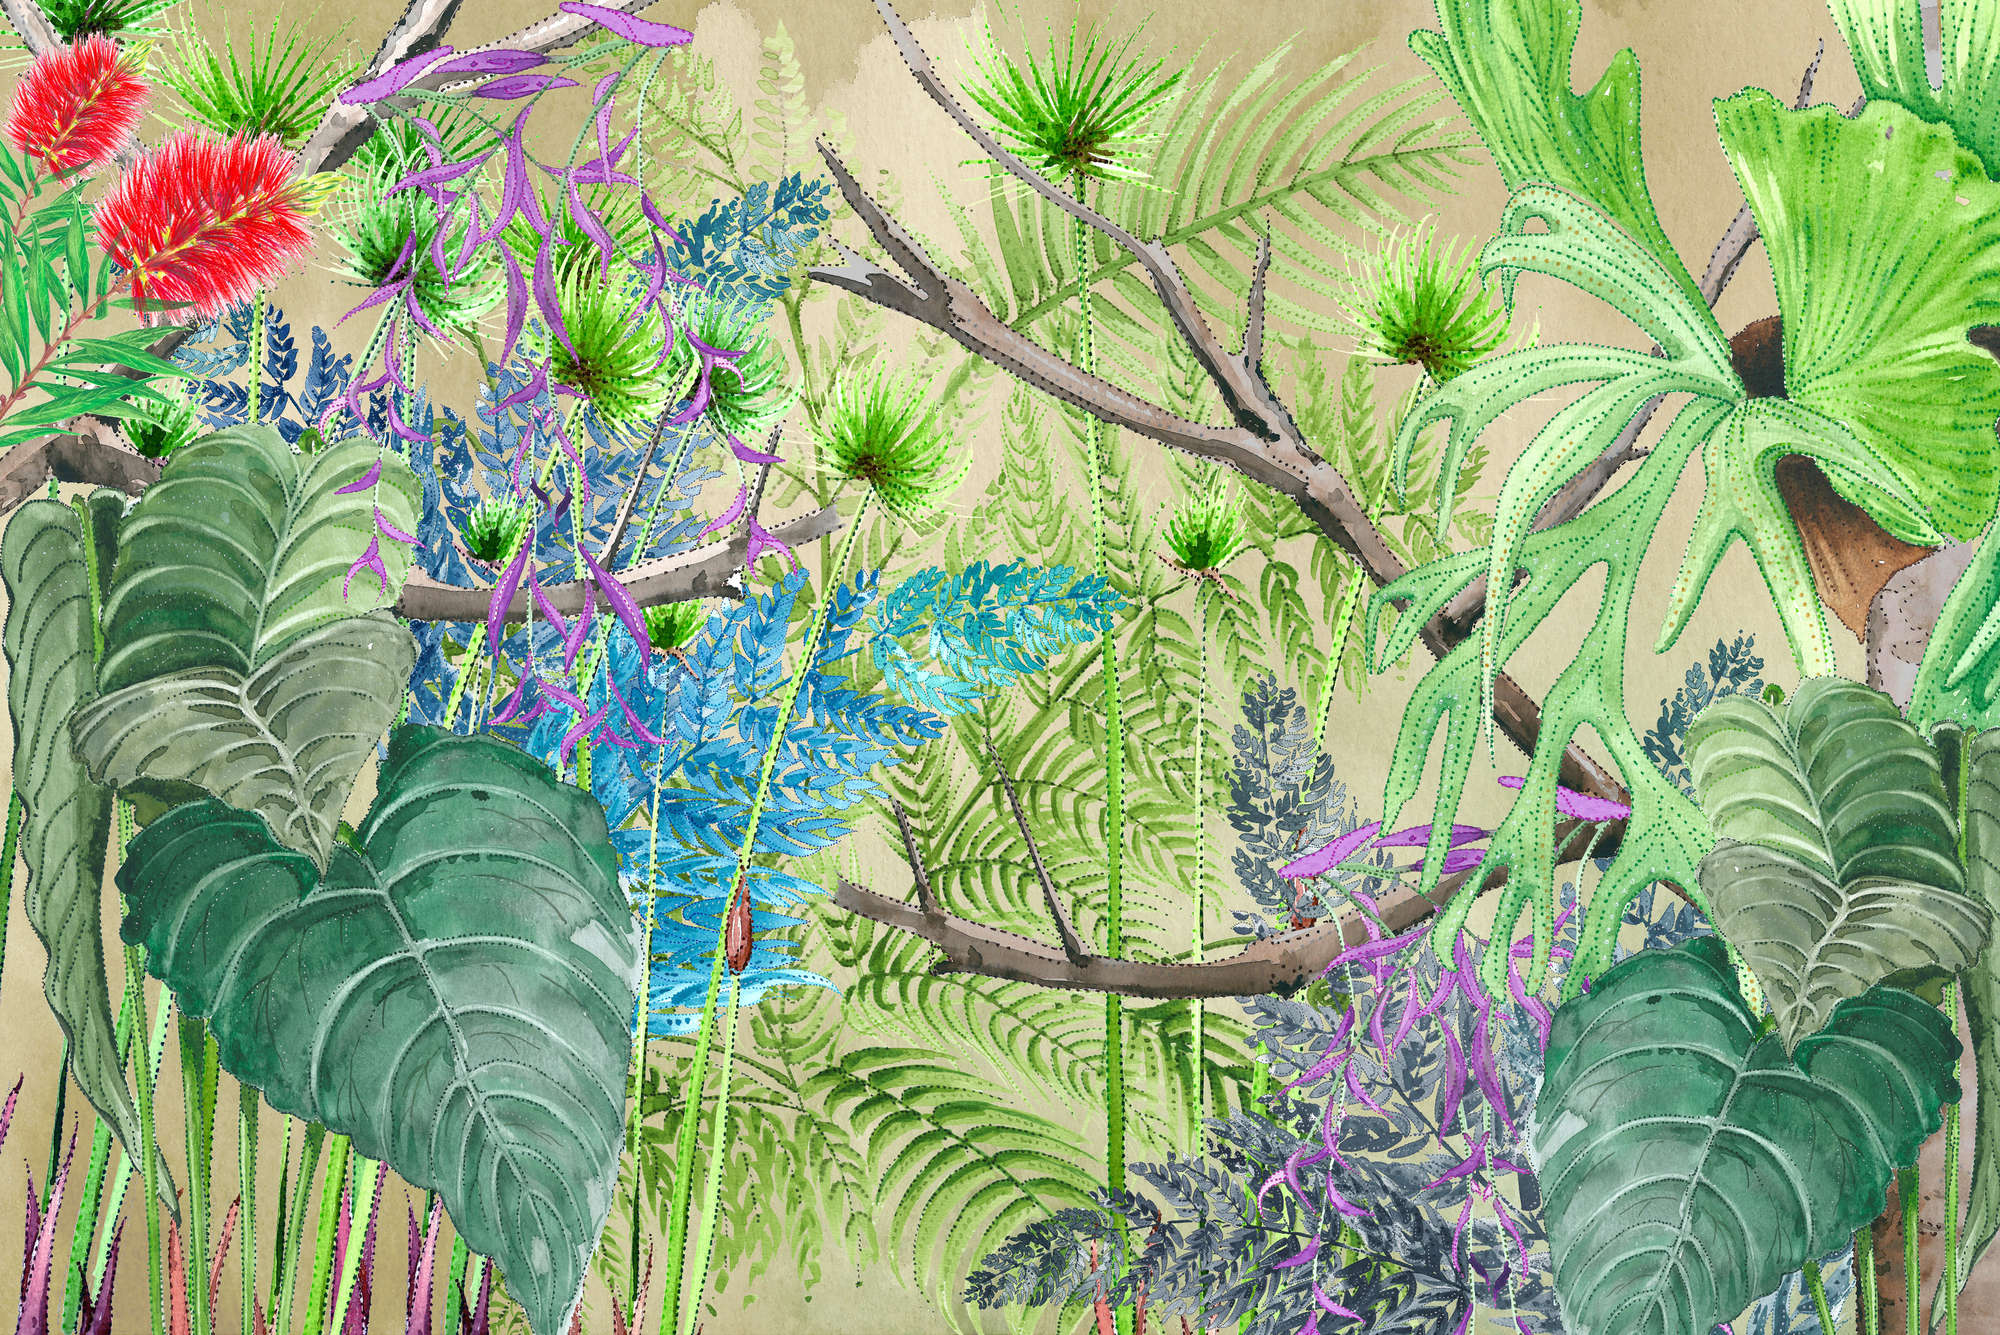             Jungle Behang met Bloemen in Blauw en Groen op Matte Gladde Vlieseline
        